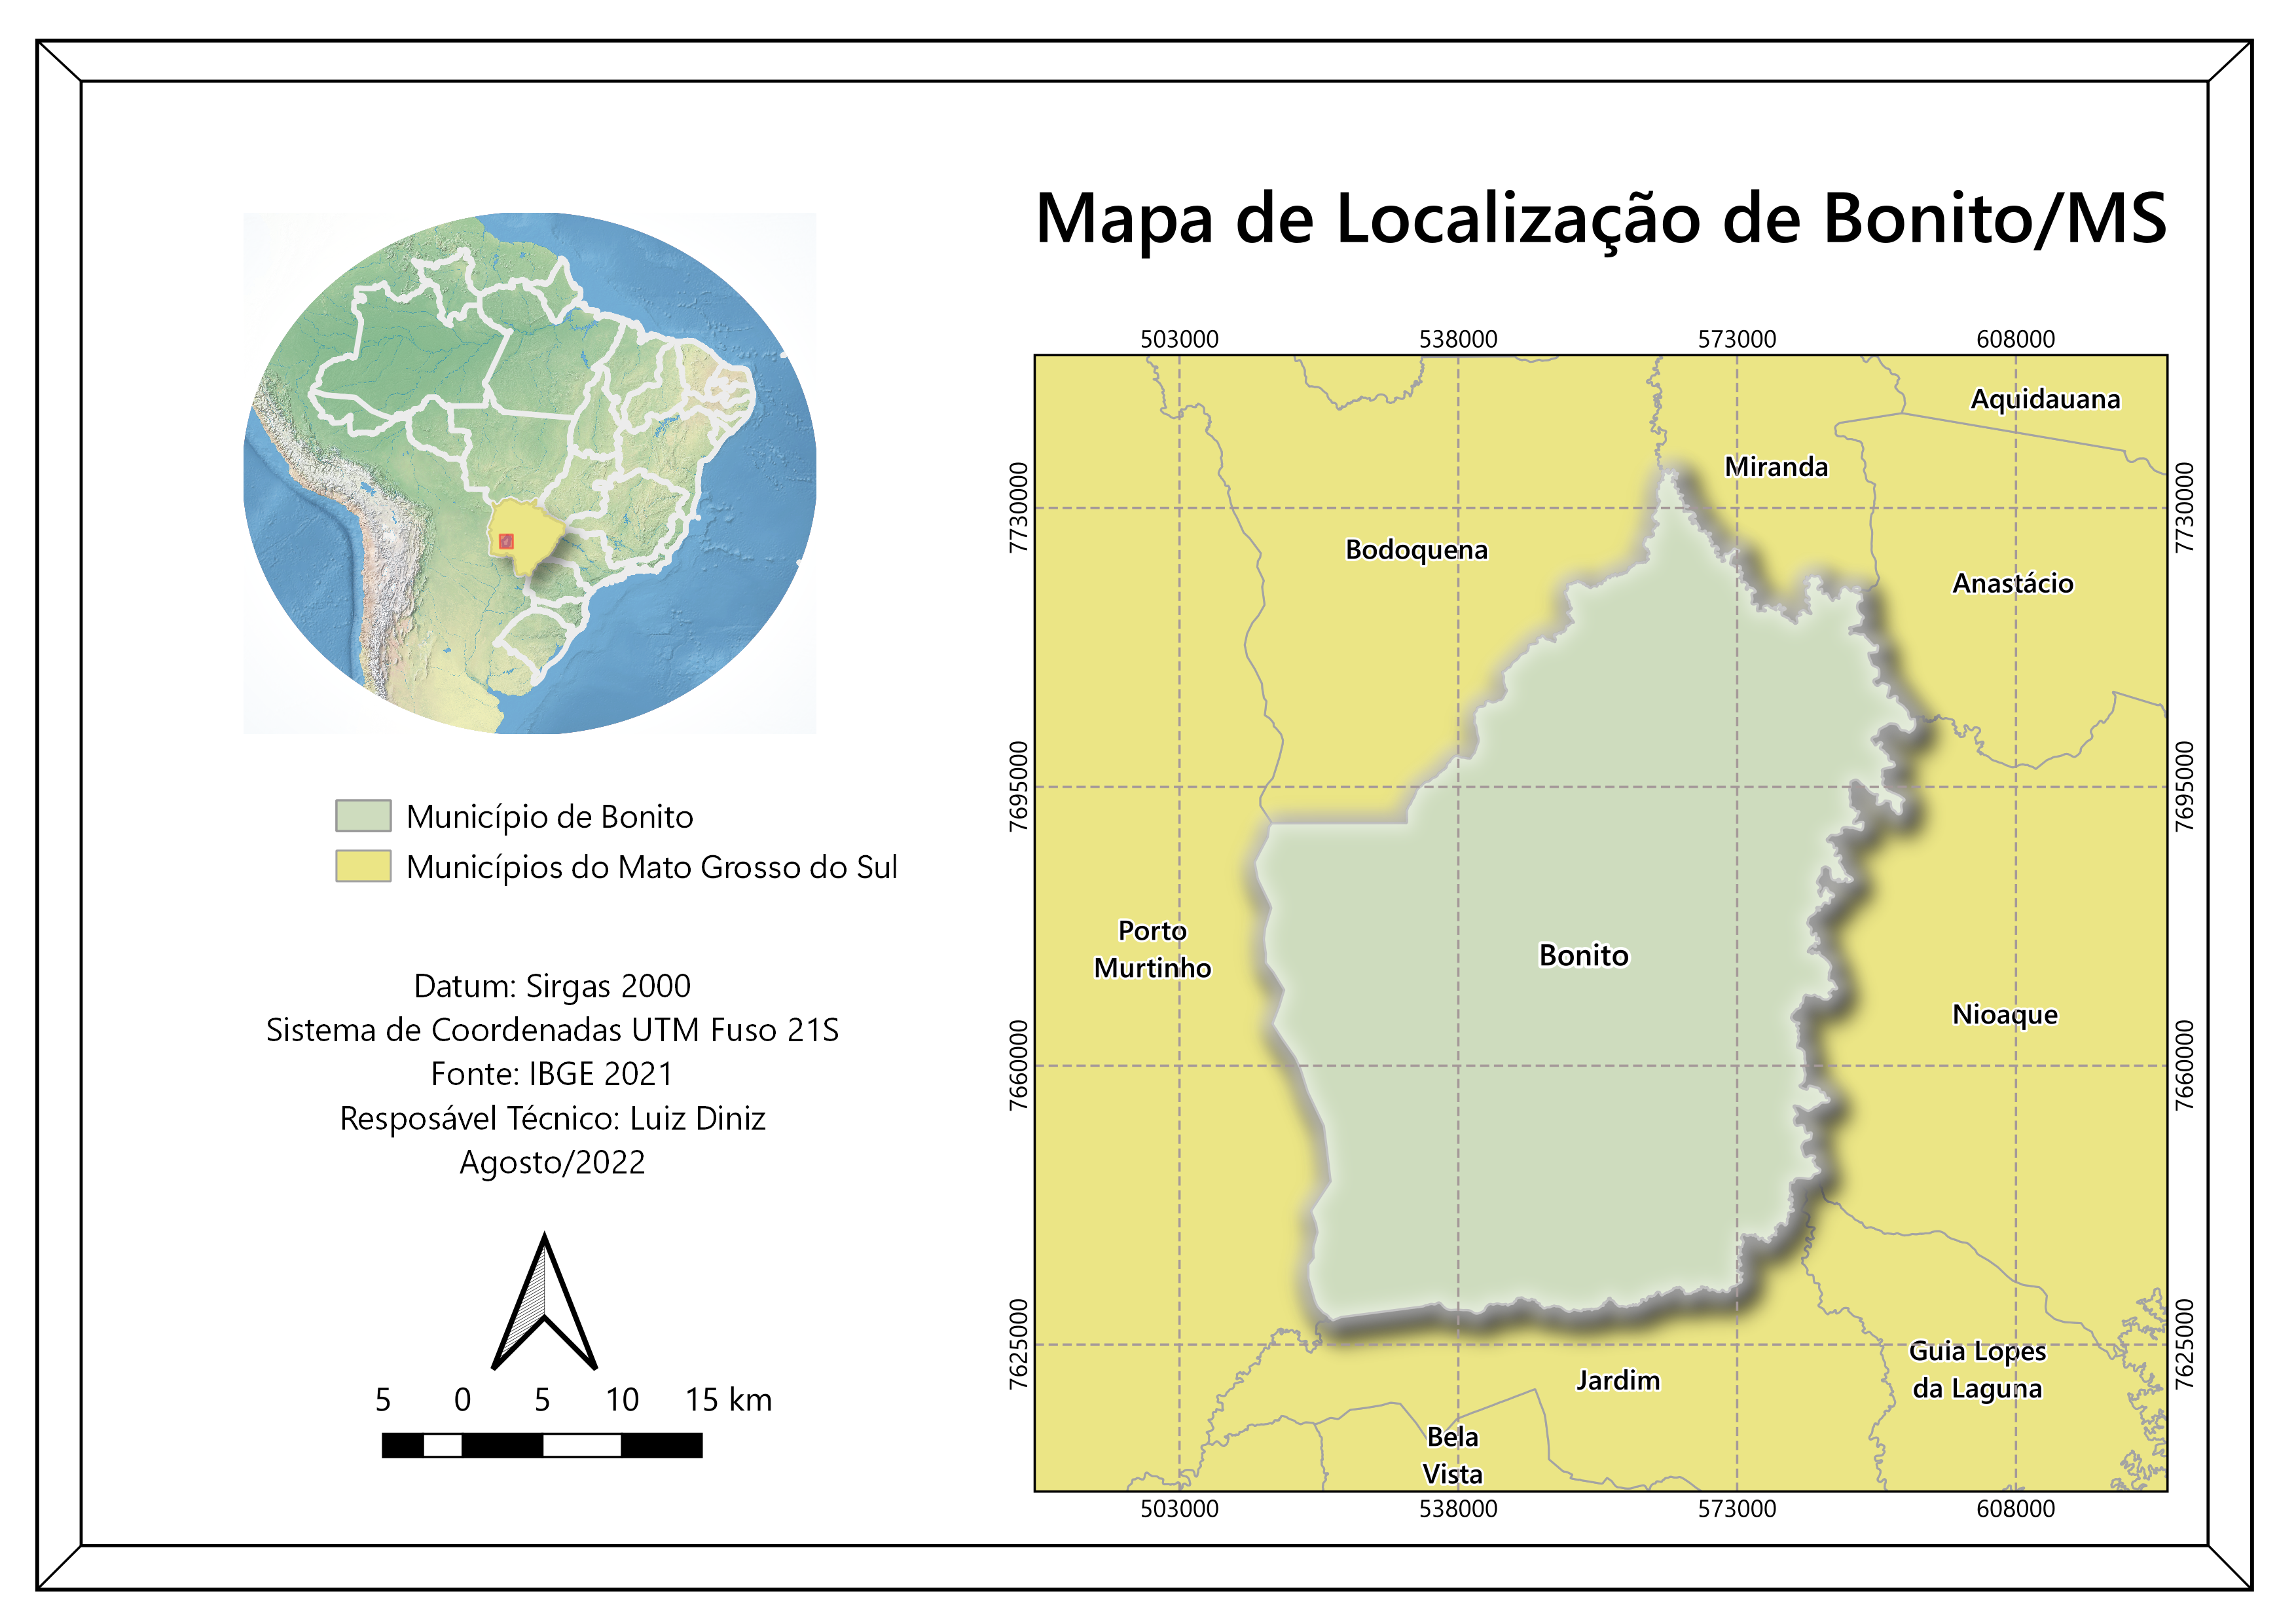 Mapa de Localização - Bonito/MS